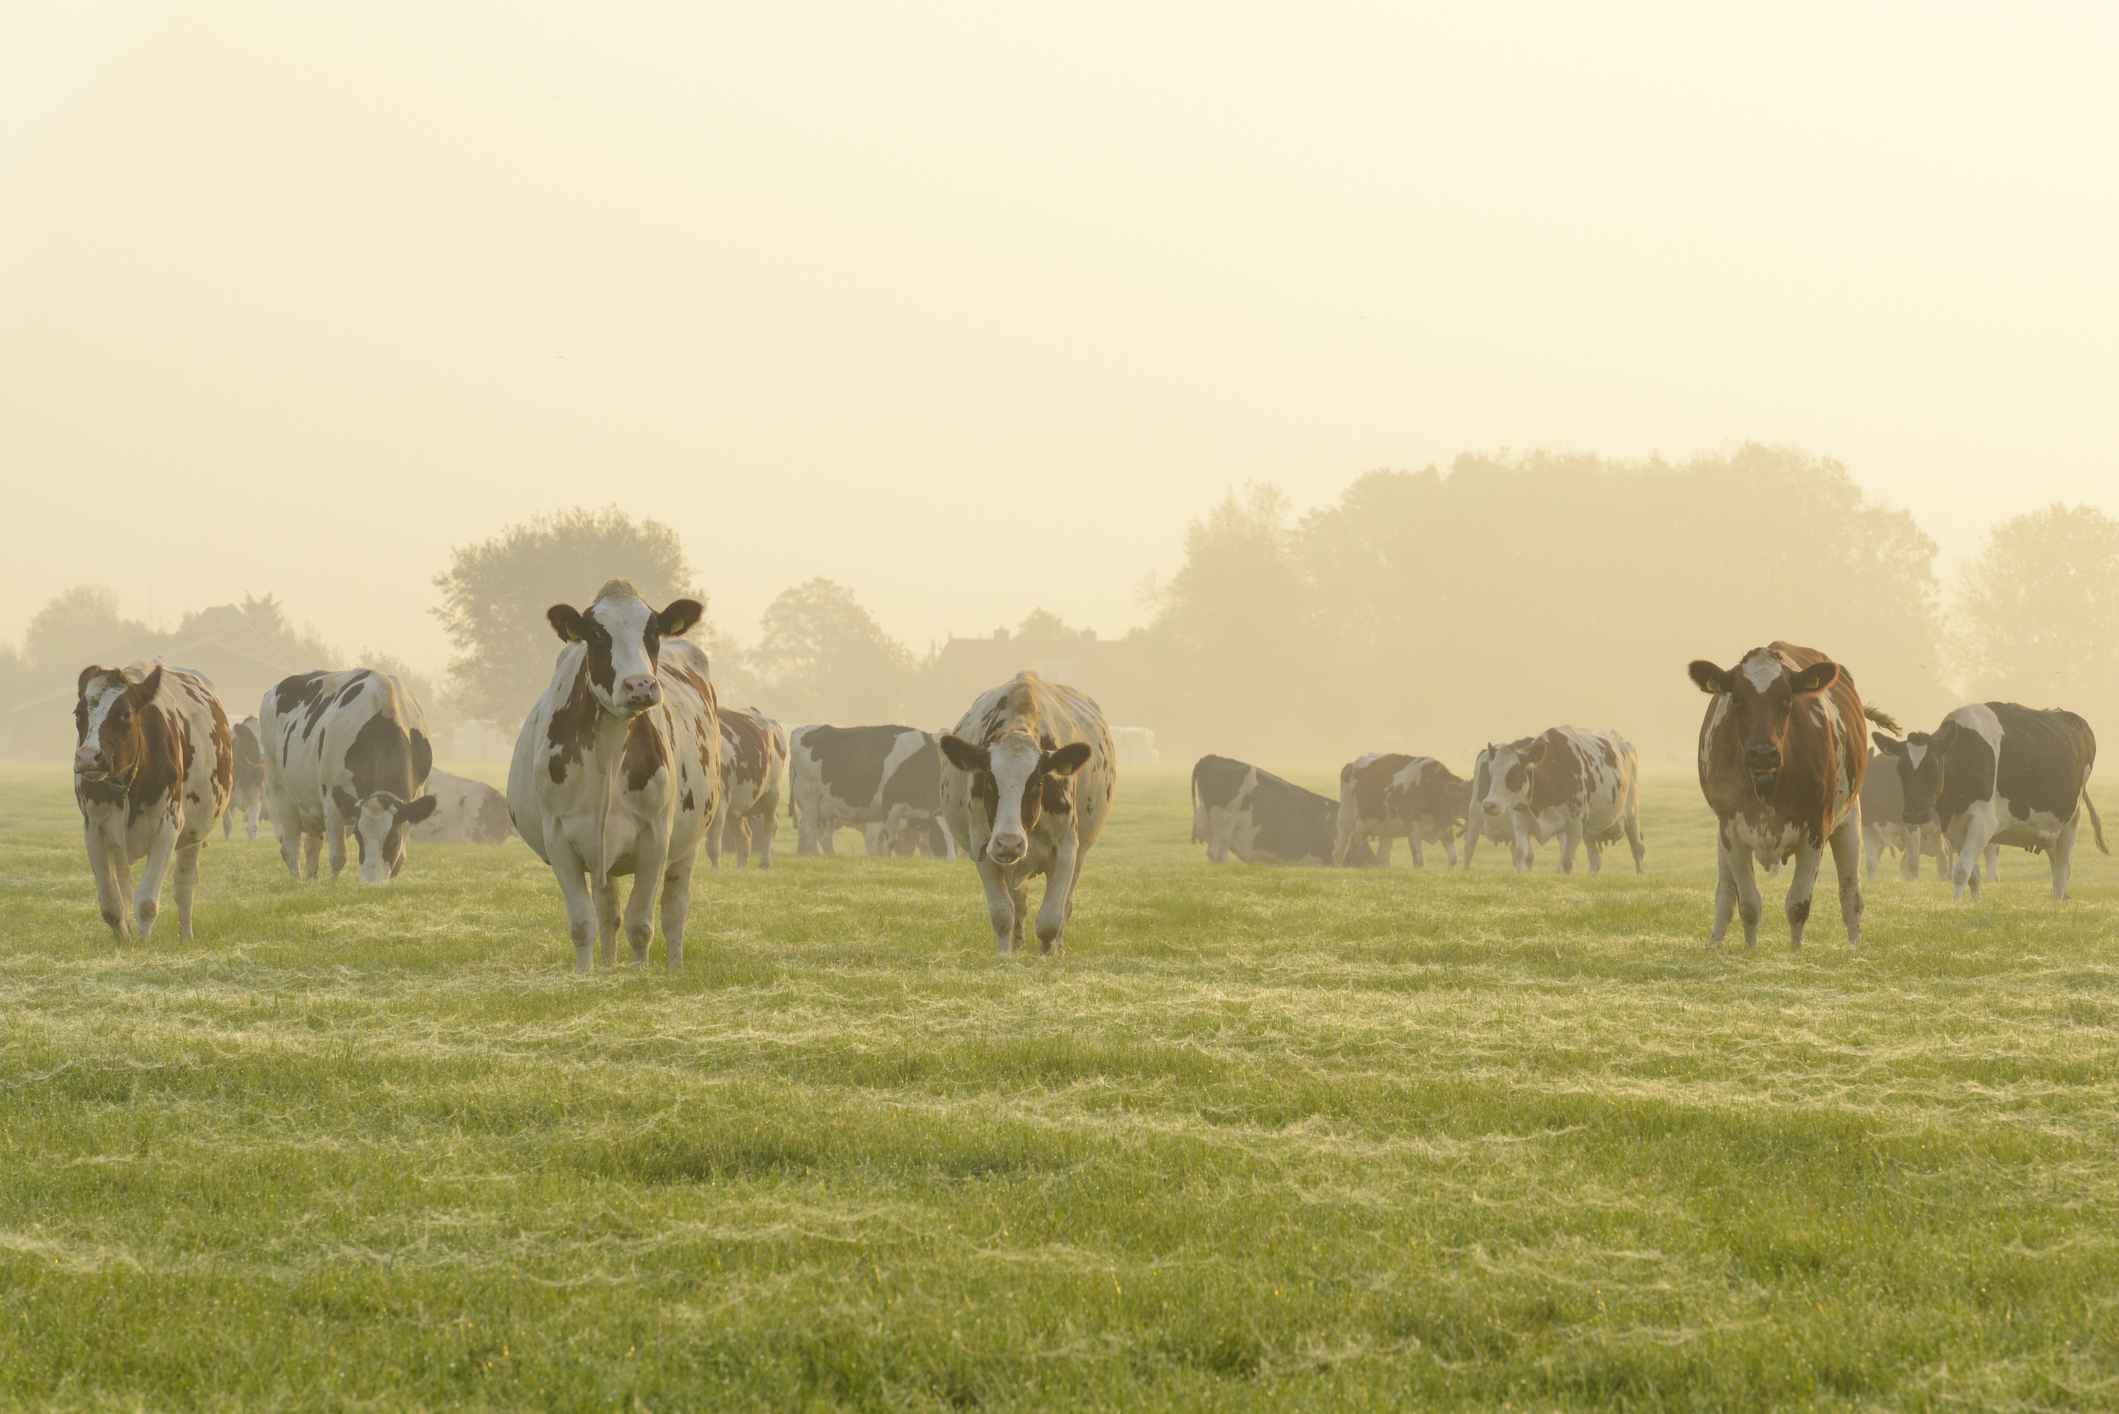 koeien-in-een-weide-tijdens-een-mistige-sunrisejpg